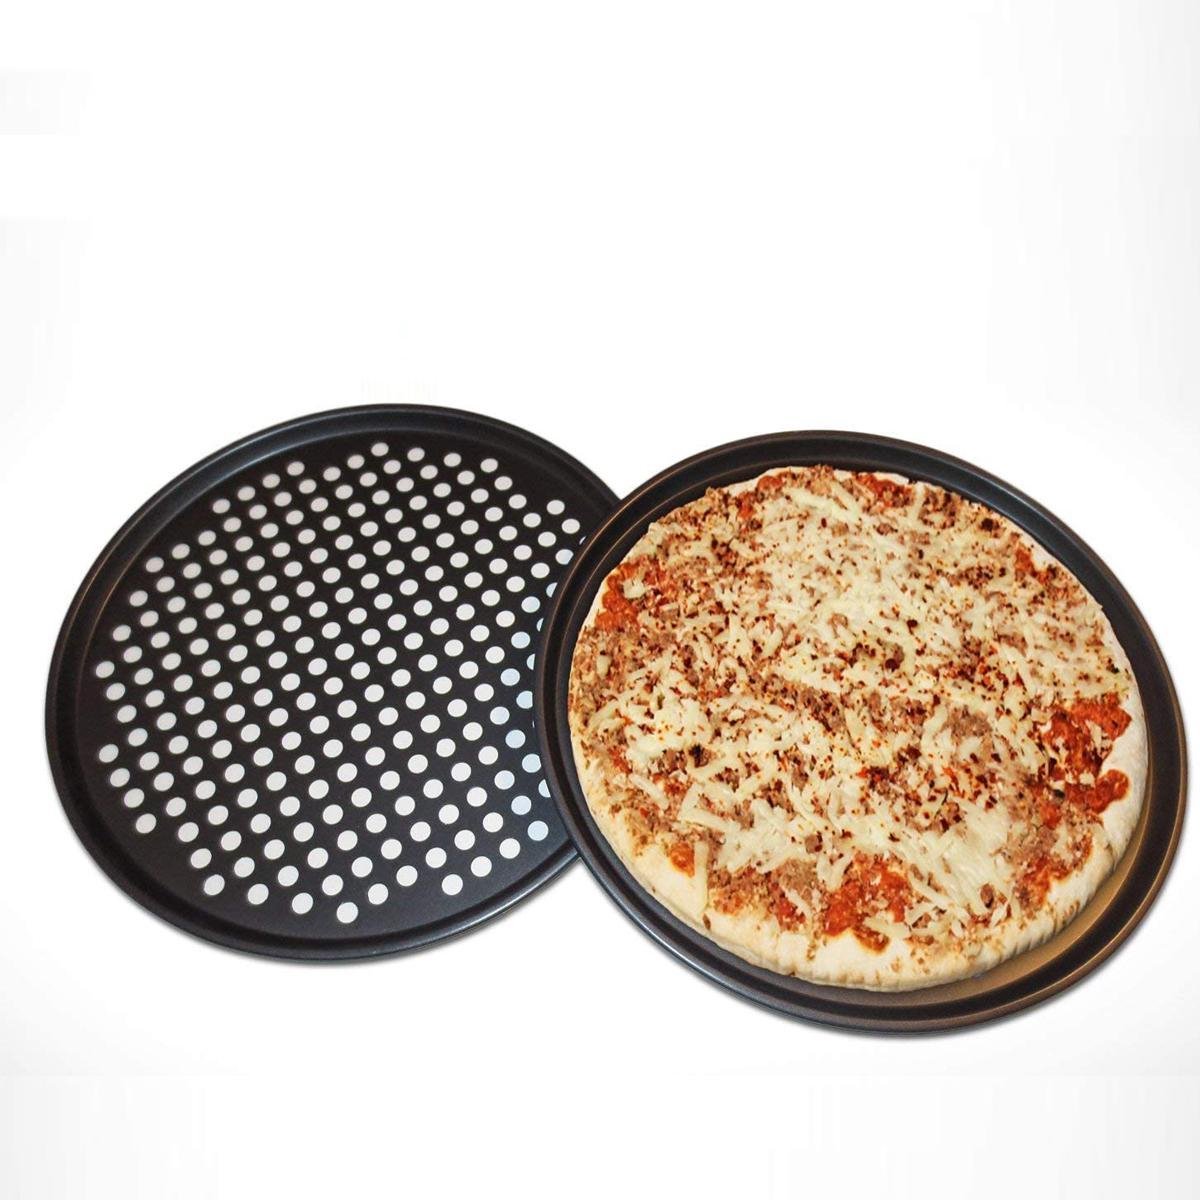 фото форма для выпечки пиццы фото 32